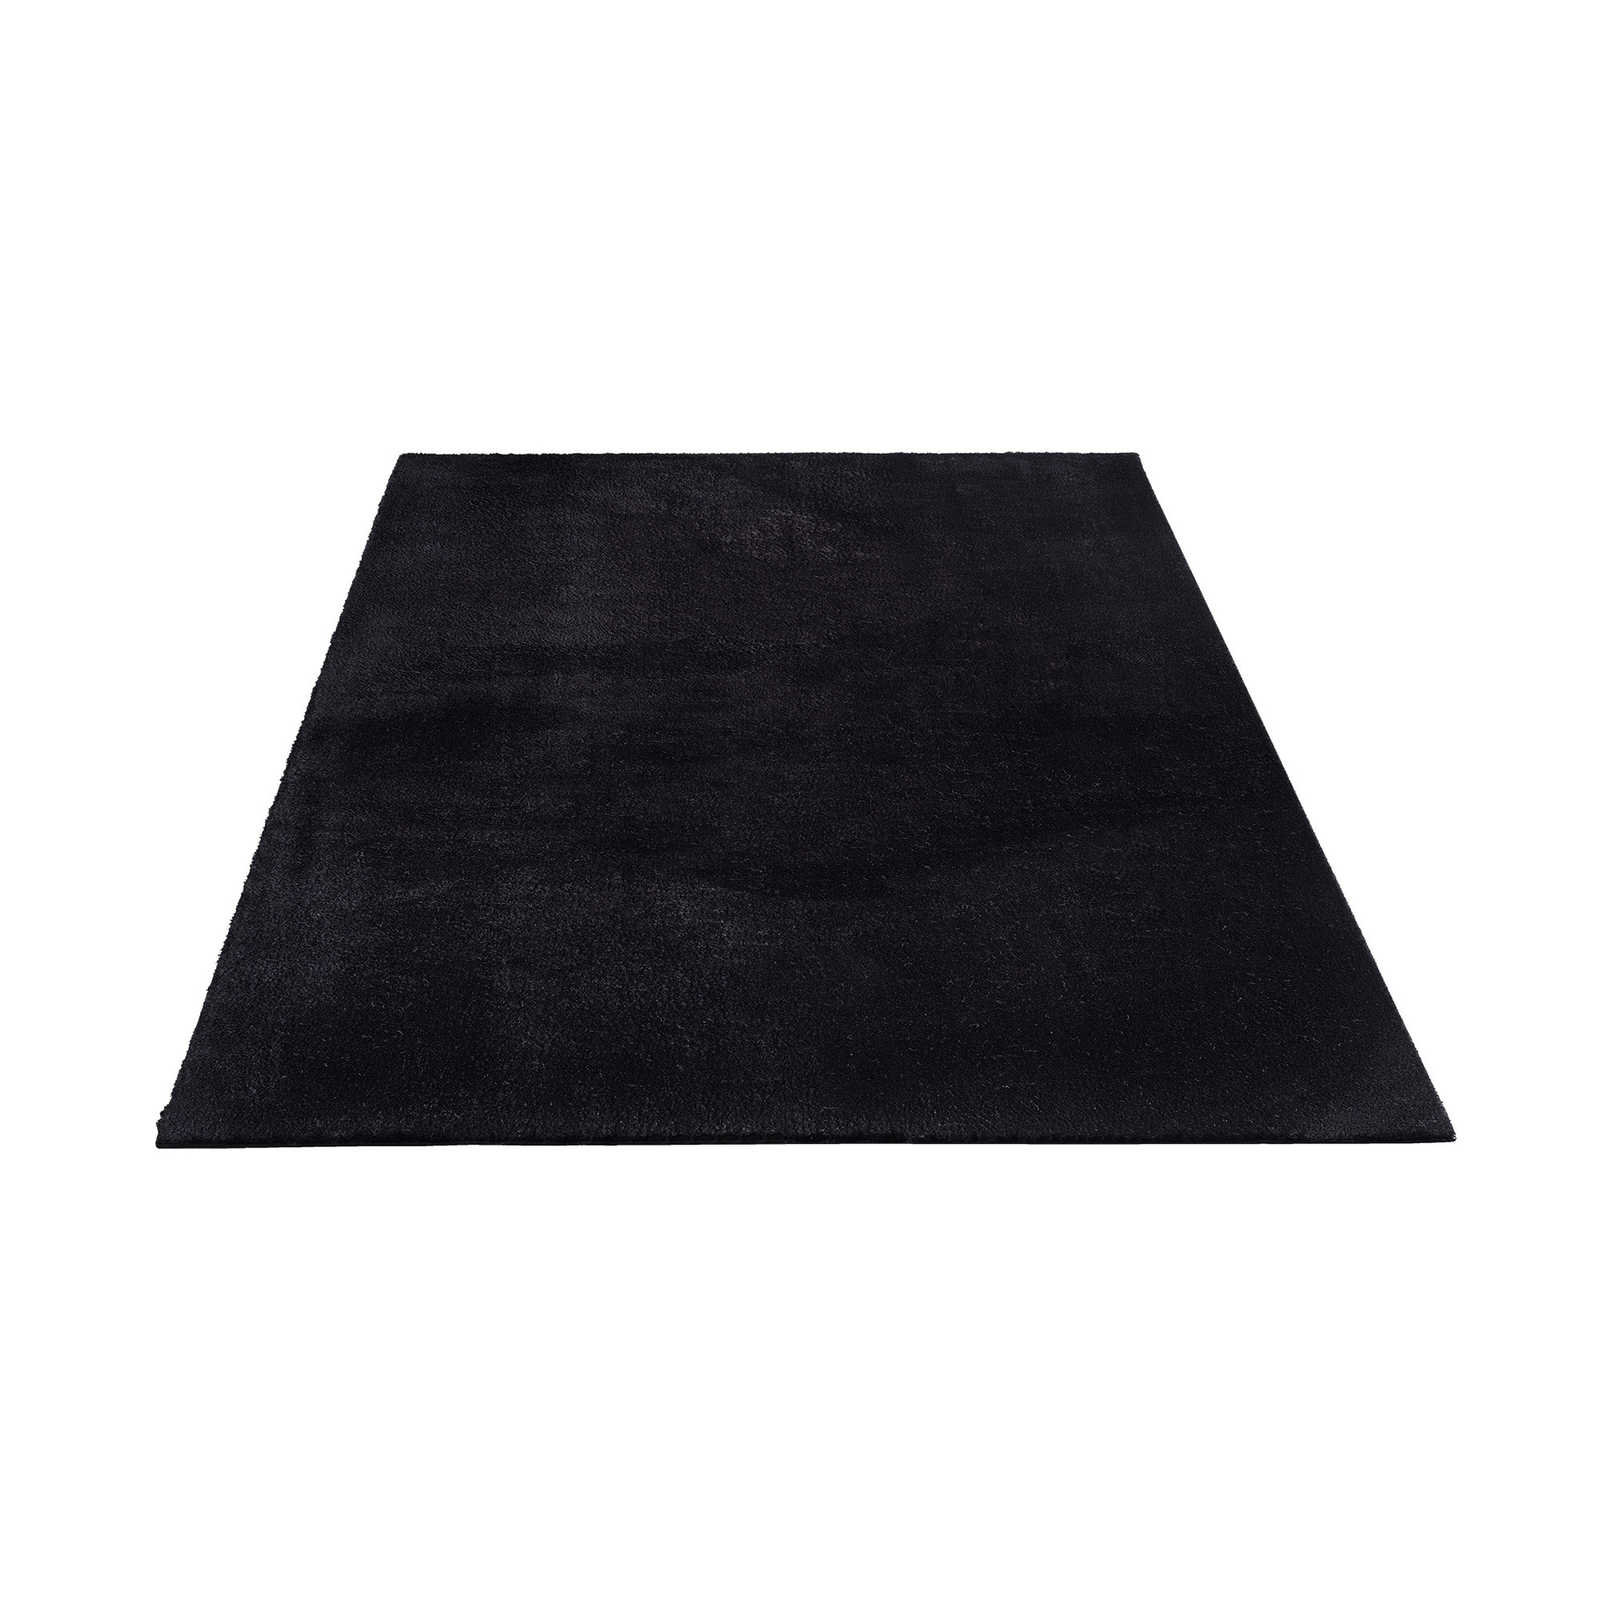 Fluweelzacht hoogpolig tapijt in zwart - 290 x 200 cm
